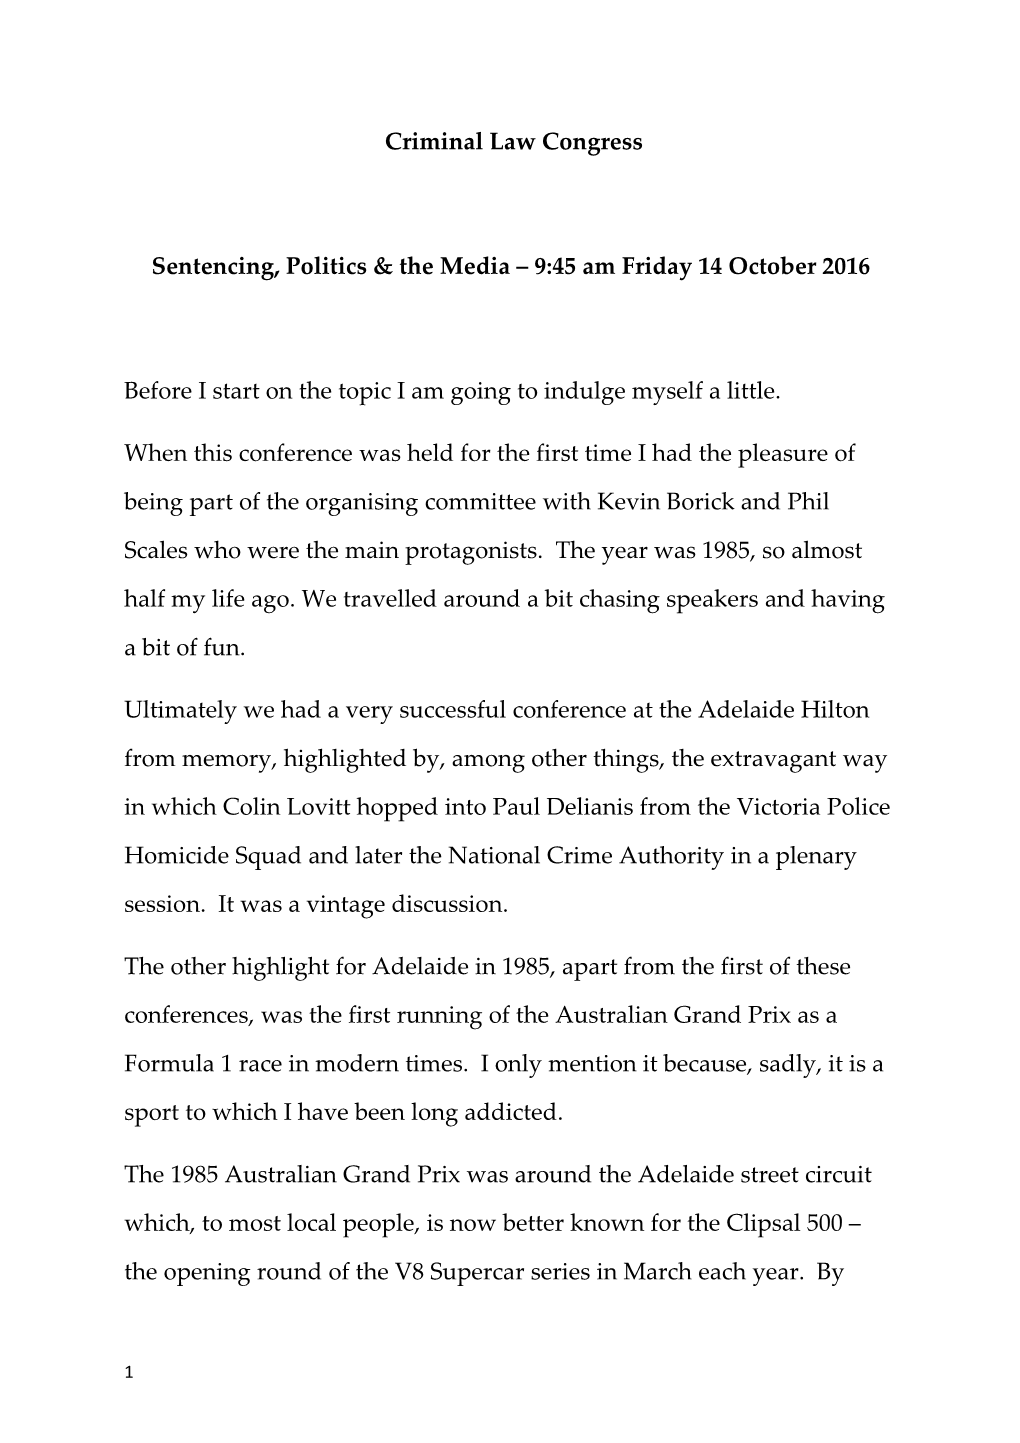 Sentencing, Politics & the Media 9:45 Am Friday 14 October 2016